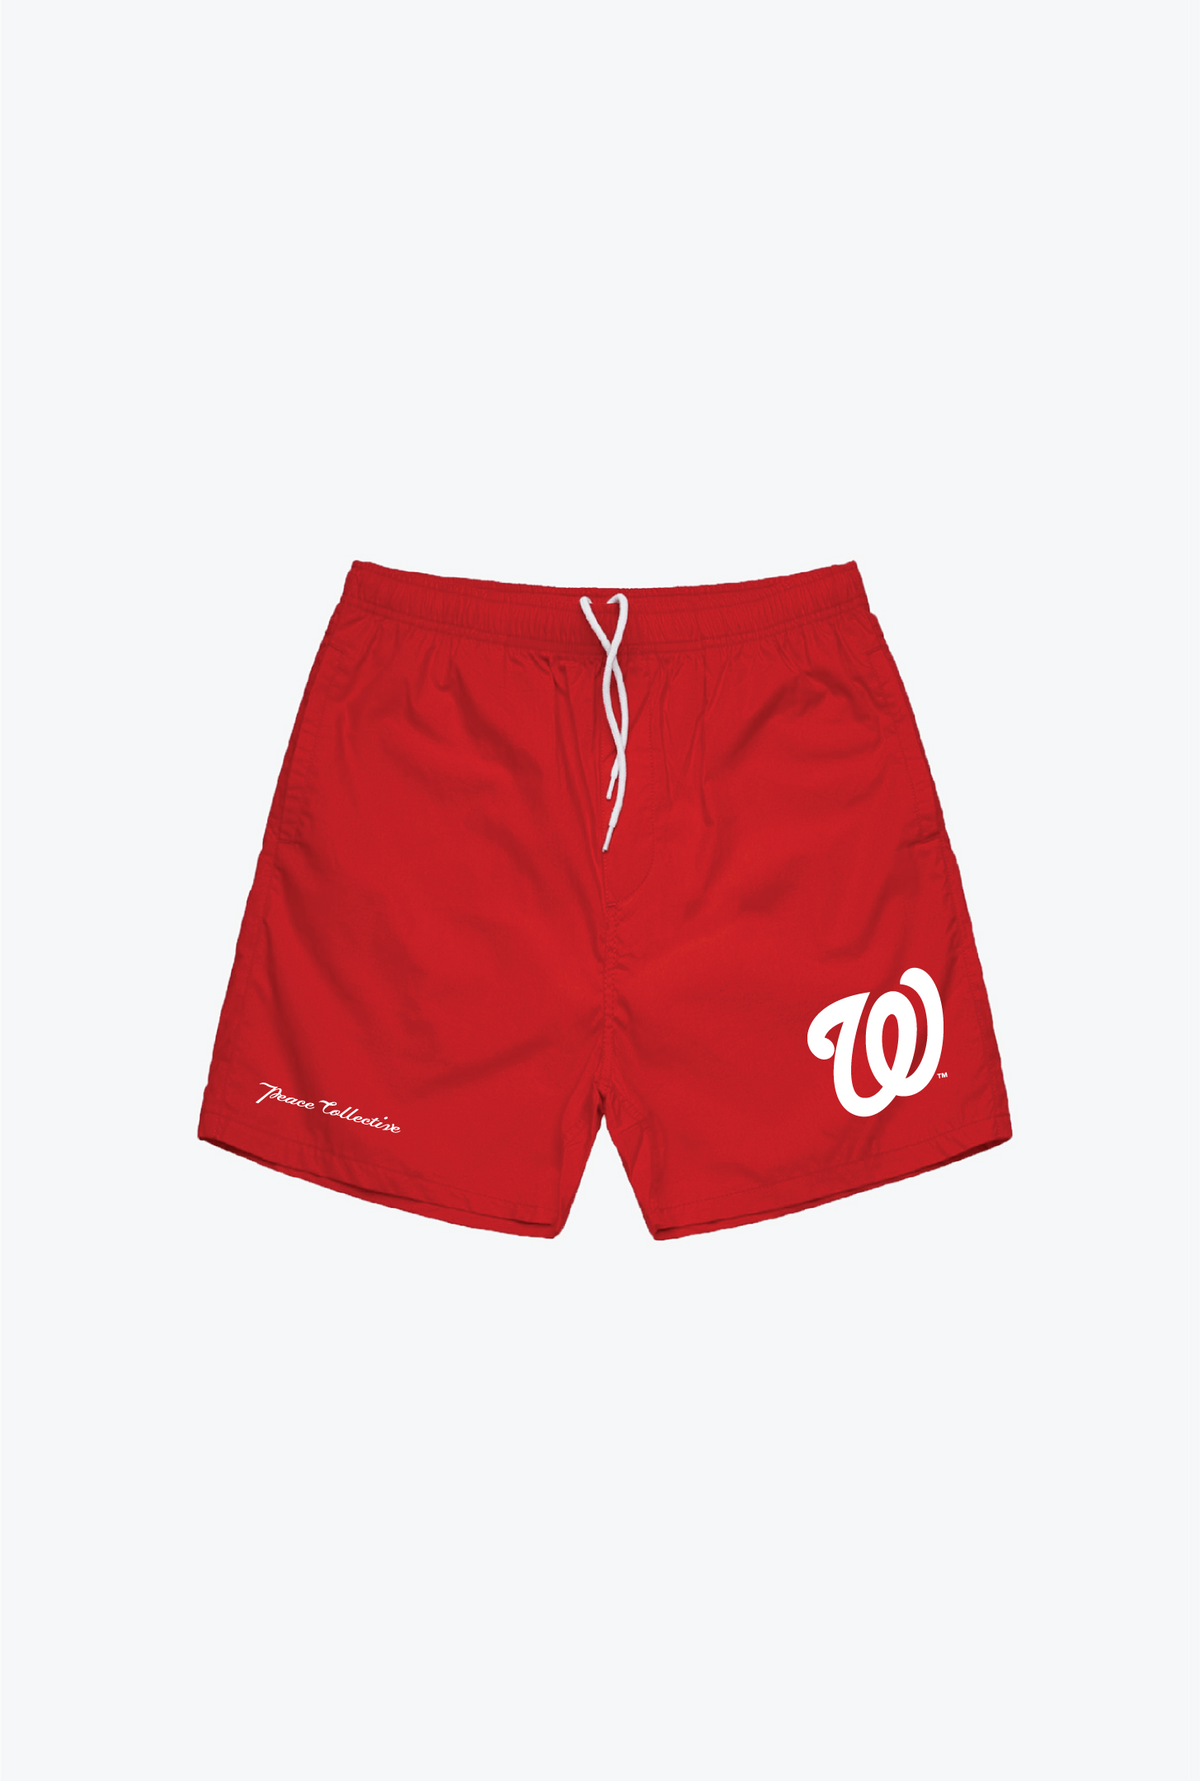 Washington Nationals Board Shorts - Red